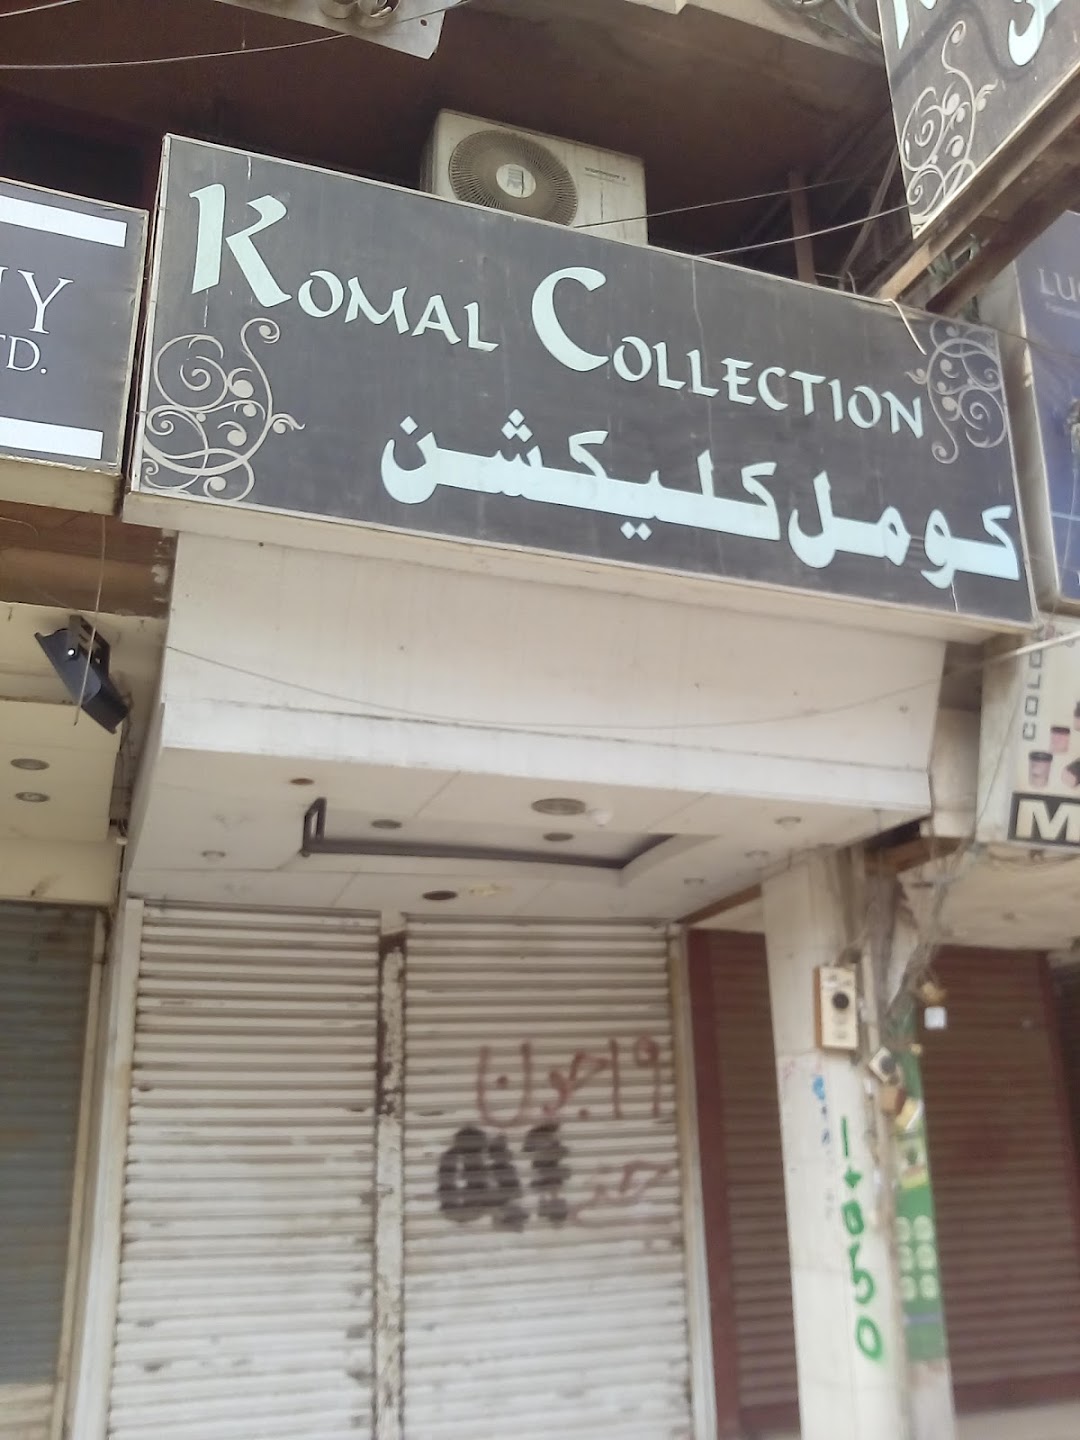 Komal Collection